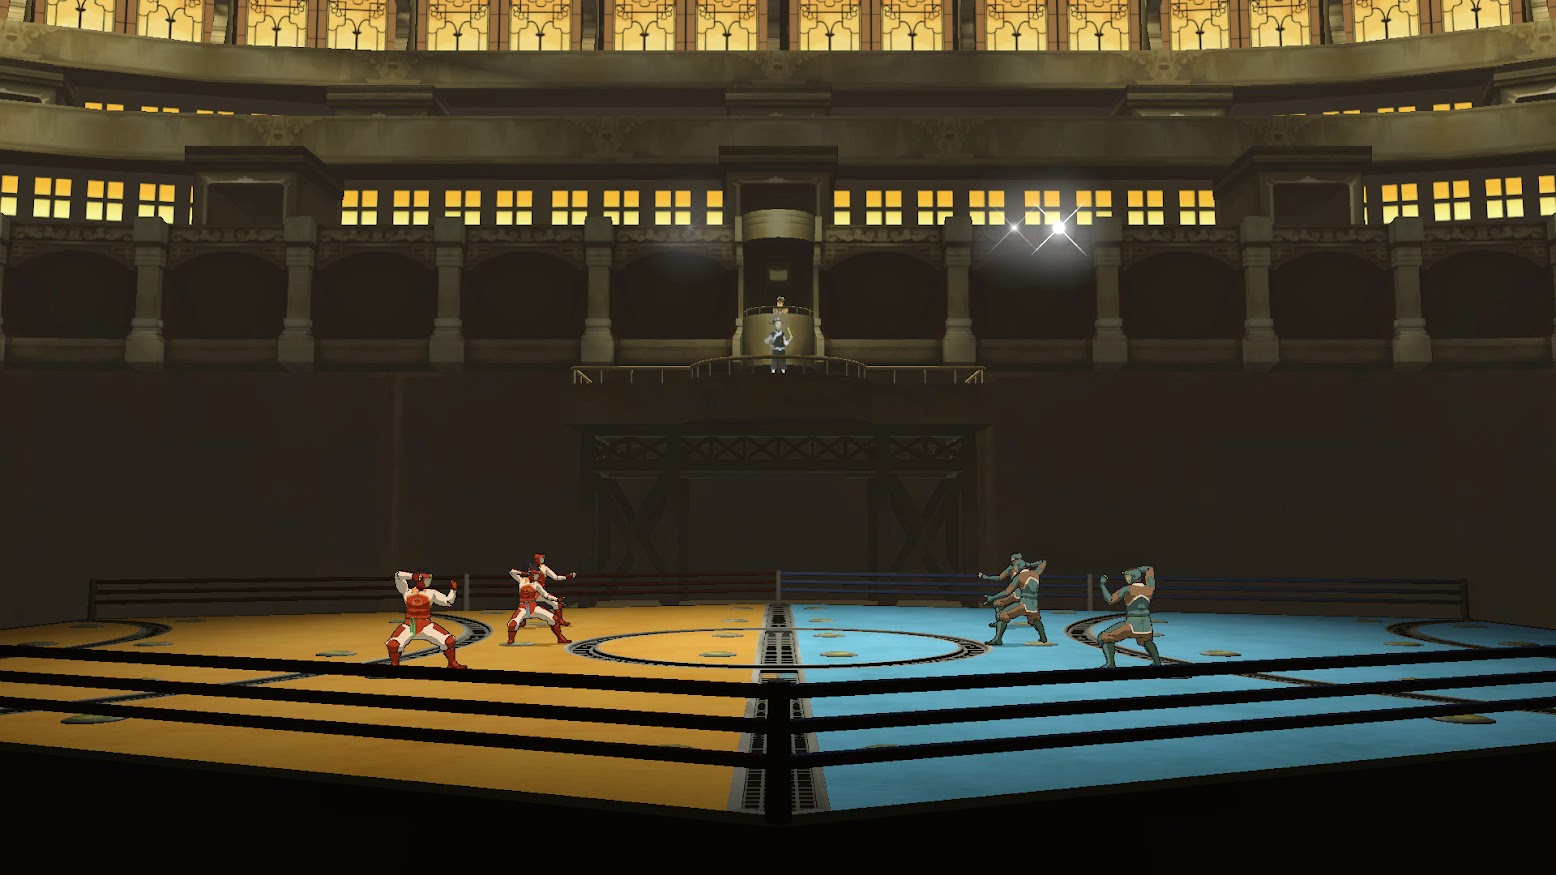 Hình ảnh trong game The Legend of Korra (screenshot)